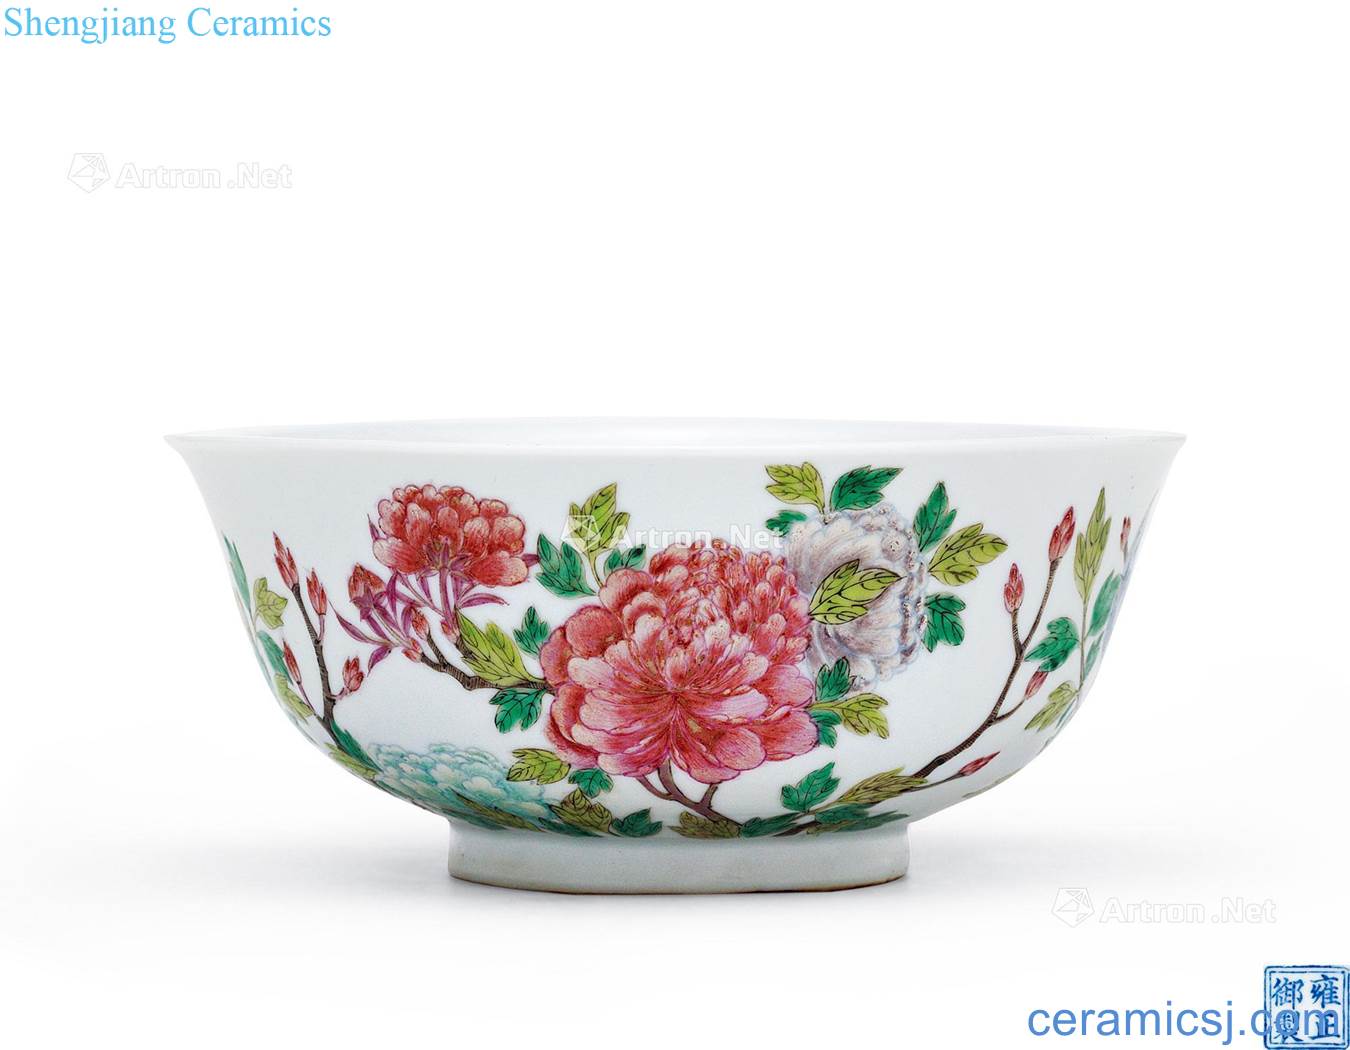 Qing yongzheng "yongzheng drive makes" the color flower green-splashed bowls